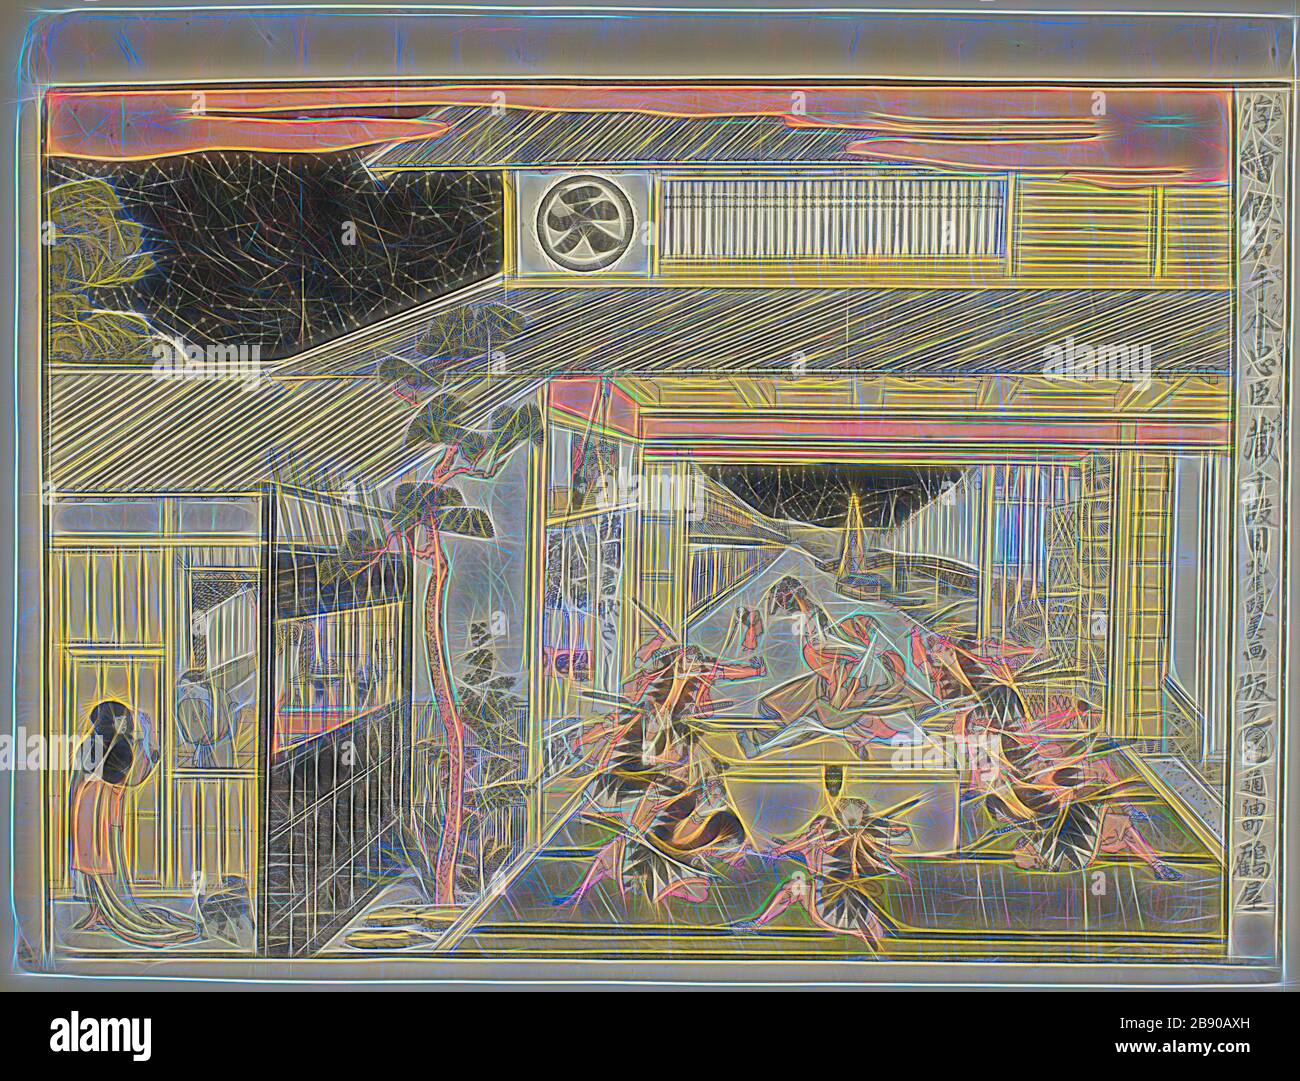 Loi X (Judanme), de la série perspective Photos de la Storehouse des fidèles déclarants (Uki-e kanadehon Chushingura), c. 1791/94, Kitao Masayoshi (Kuwagata Keisai), japonais, 1764–1824, Japon, imprimé color woodblock, horizontal o-oban, 33,4 x 43,8 cm, repensé par Gibon, design de glanissement chaleureux et gai de luminosité et de rayons de lumière radiance. L'art classique réinventé avec une touche moderne. La photographie inspirée du futurisme, qui embrasse l'énergie dynamique de la technologie moderne, du mouvement, de la vitesse et révolutionne la culture. Banque D'Images